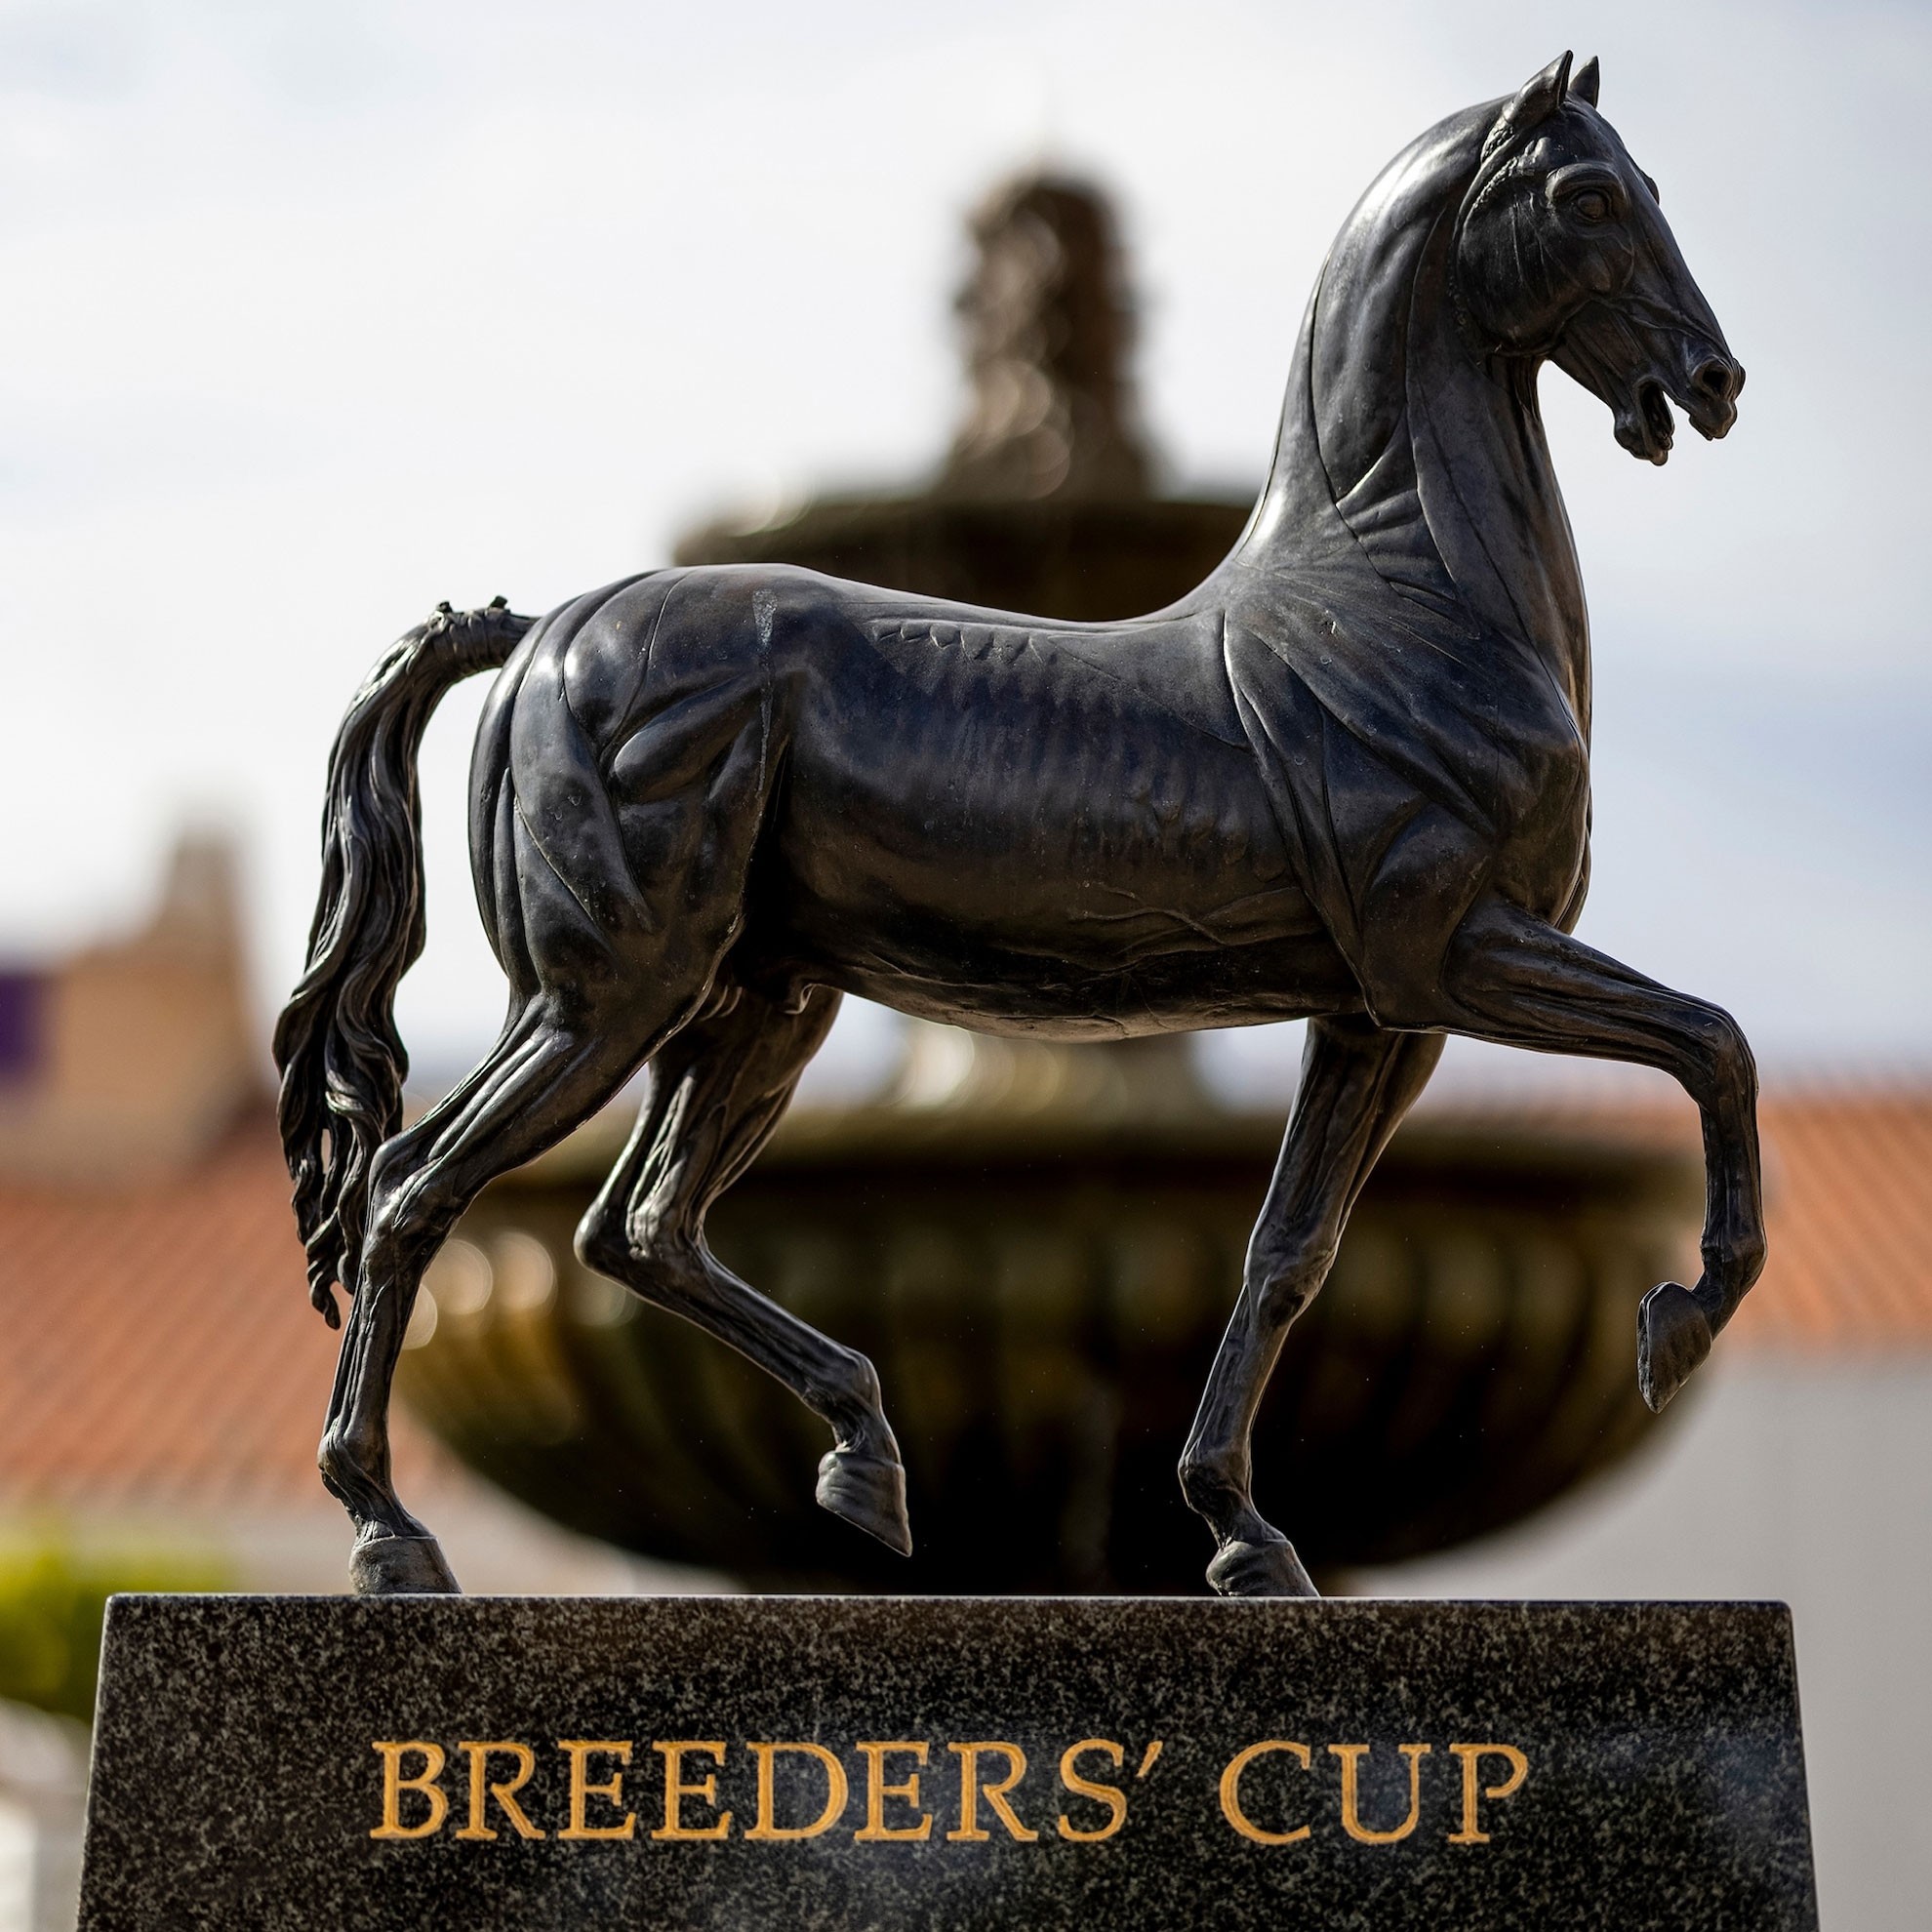 Breeders' Cup trophy